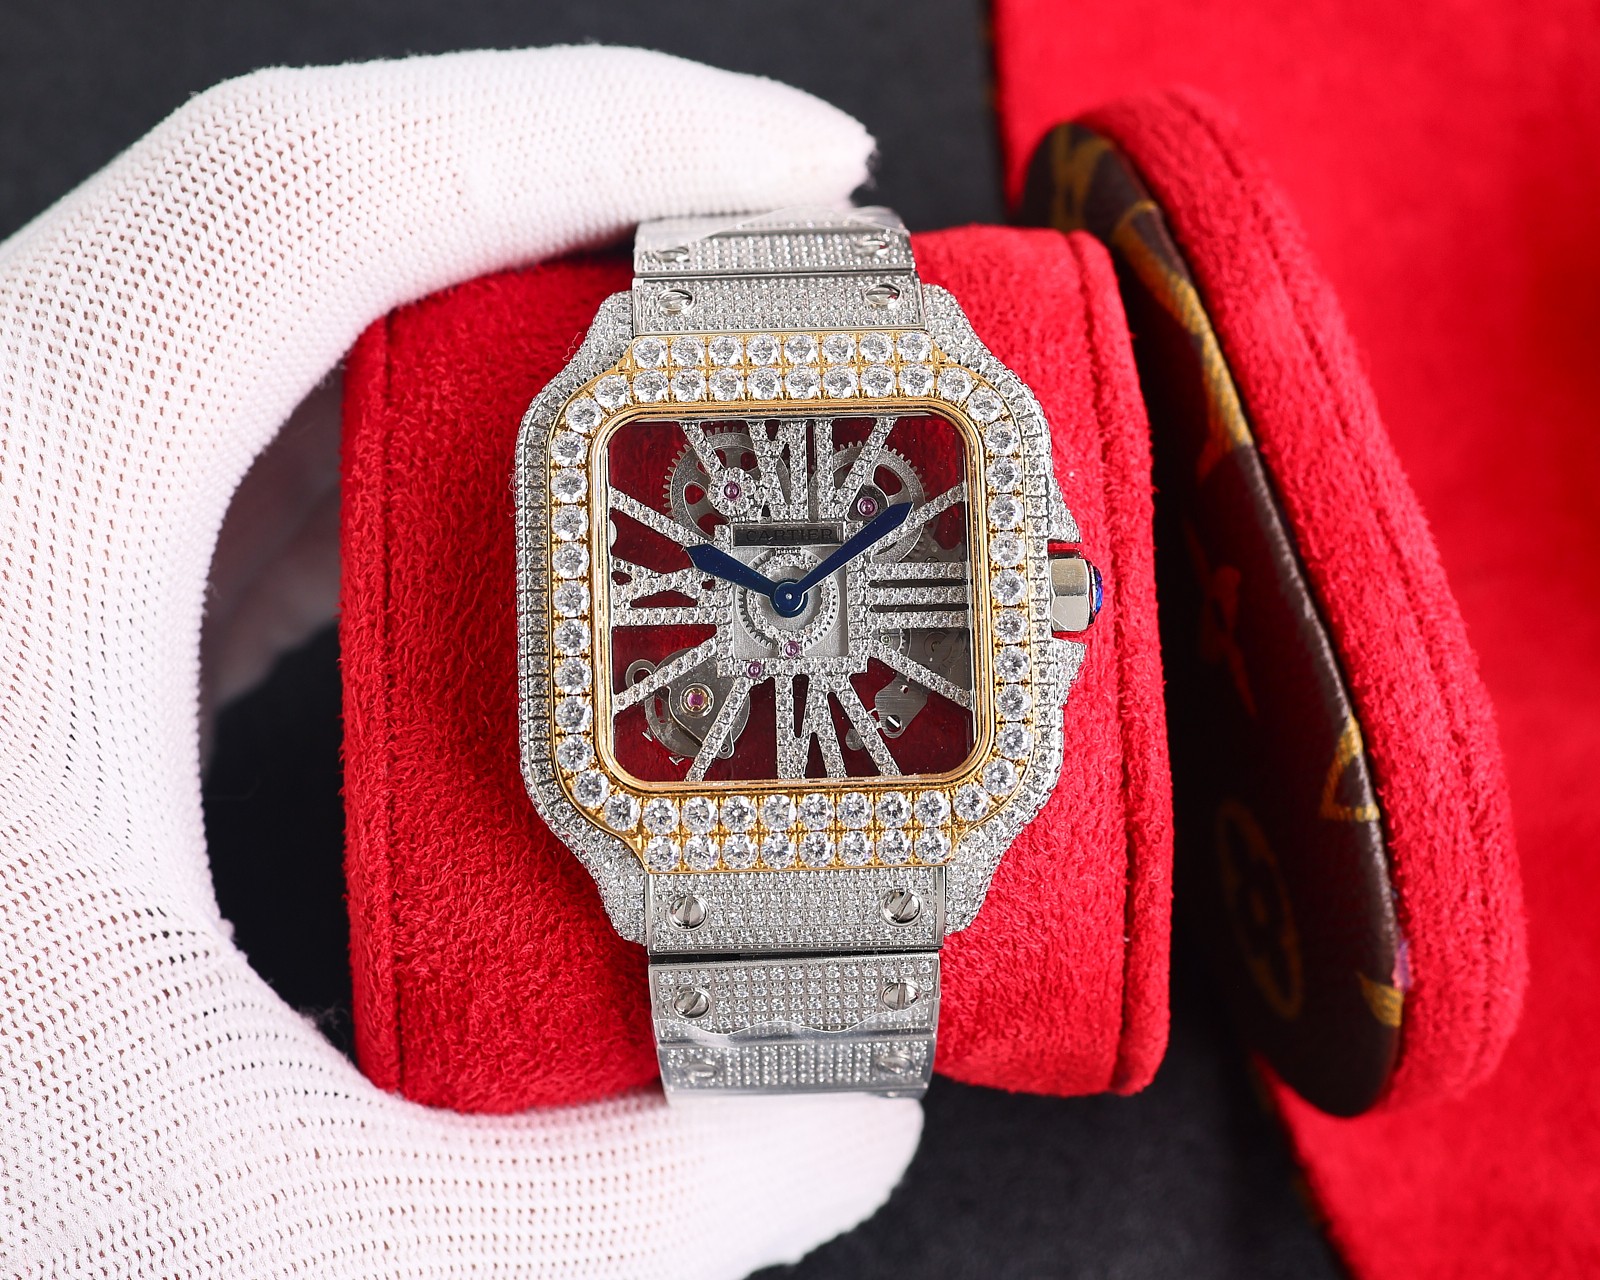 CARTIERカルティエ 腕時計 似てるスーパーコピー フランス 薄いワッチ レザー 四角い時計 スチールバンド_2